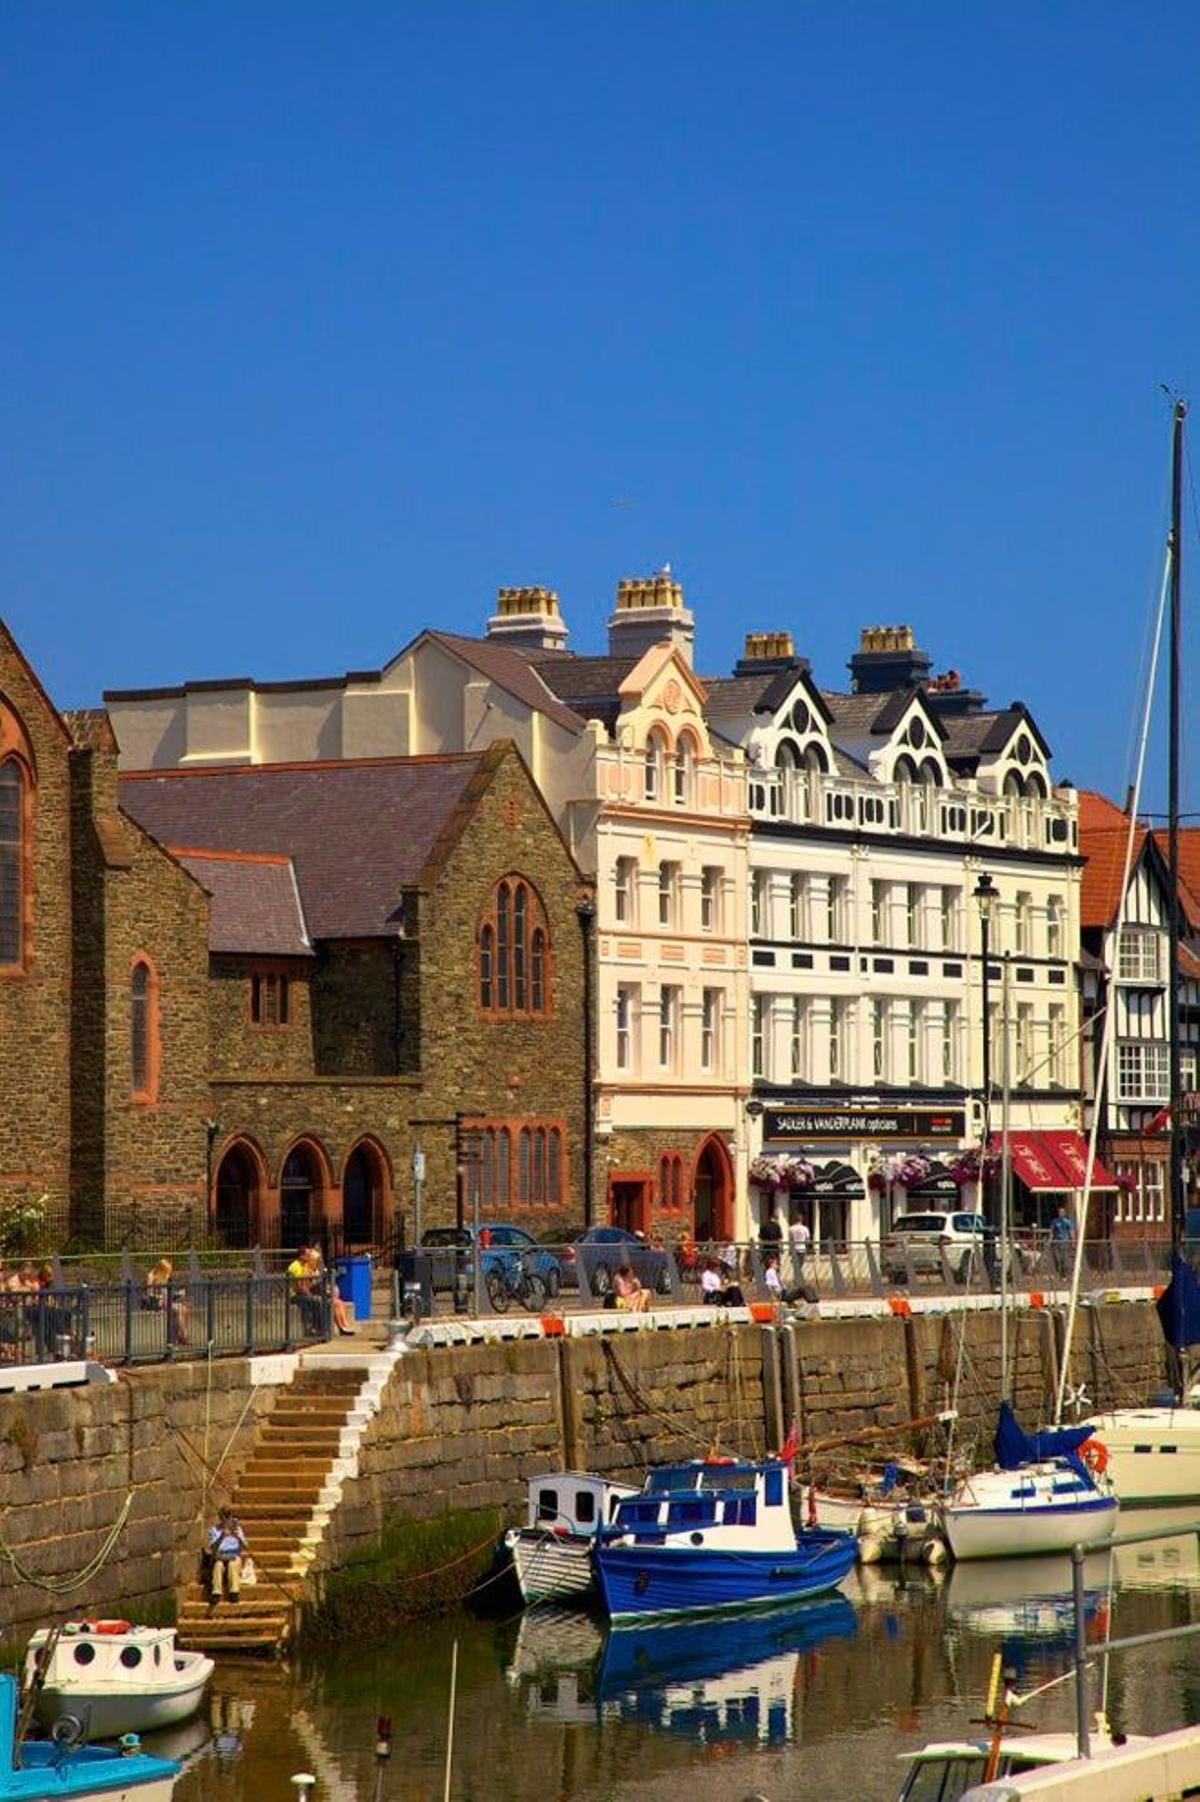 Marina de Douglas, capital de la Isla de Man.